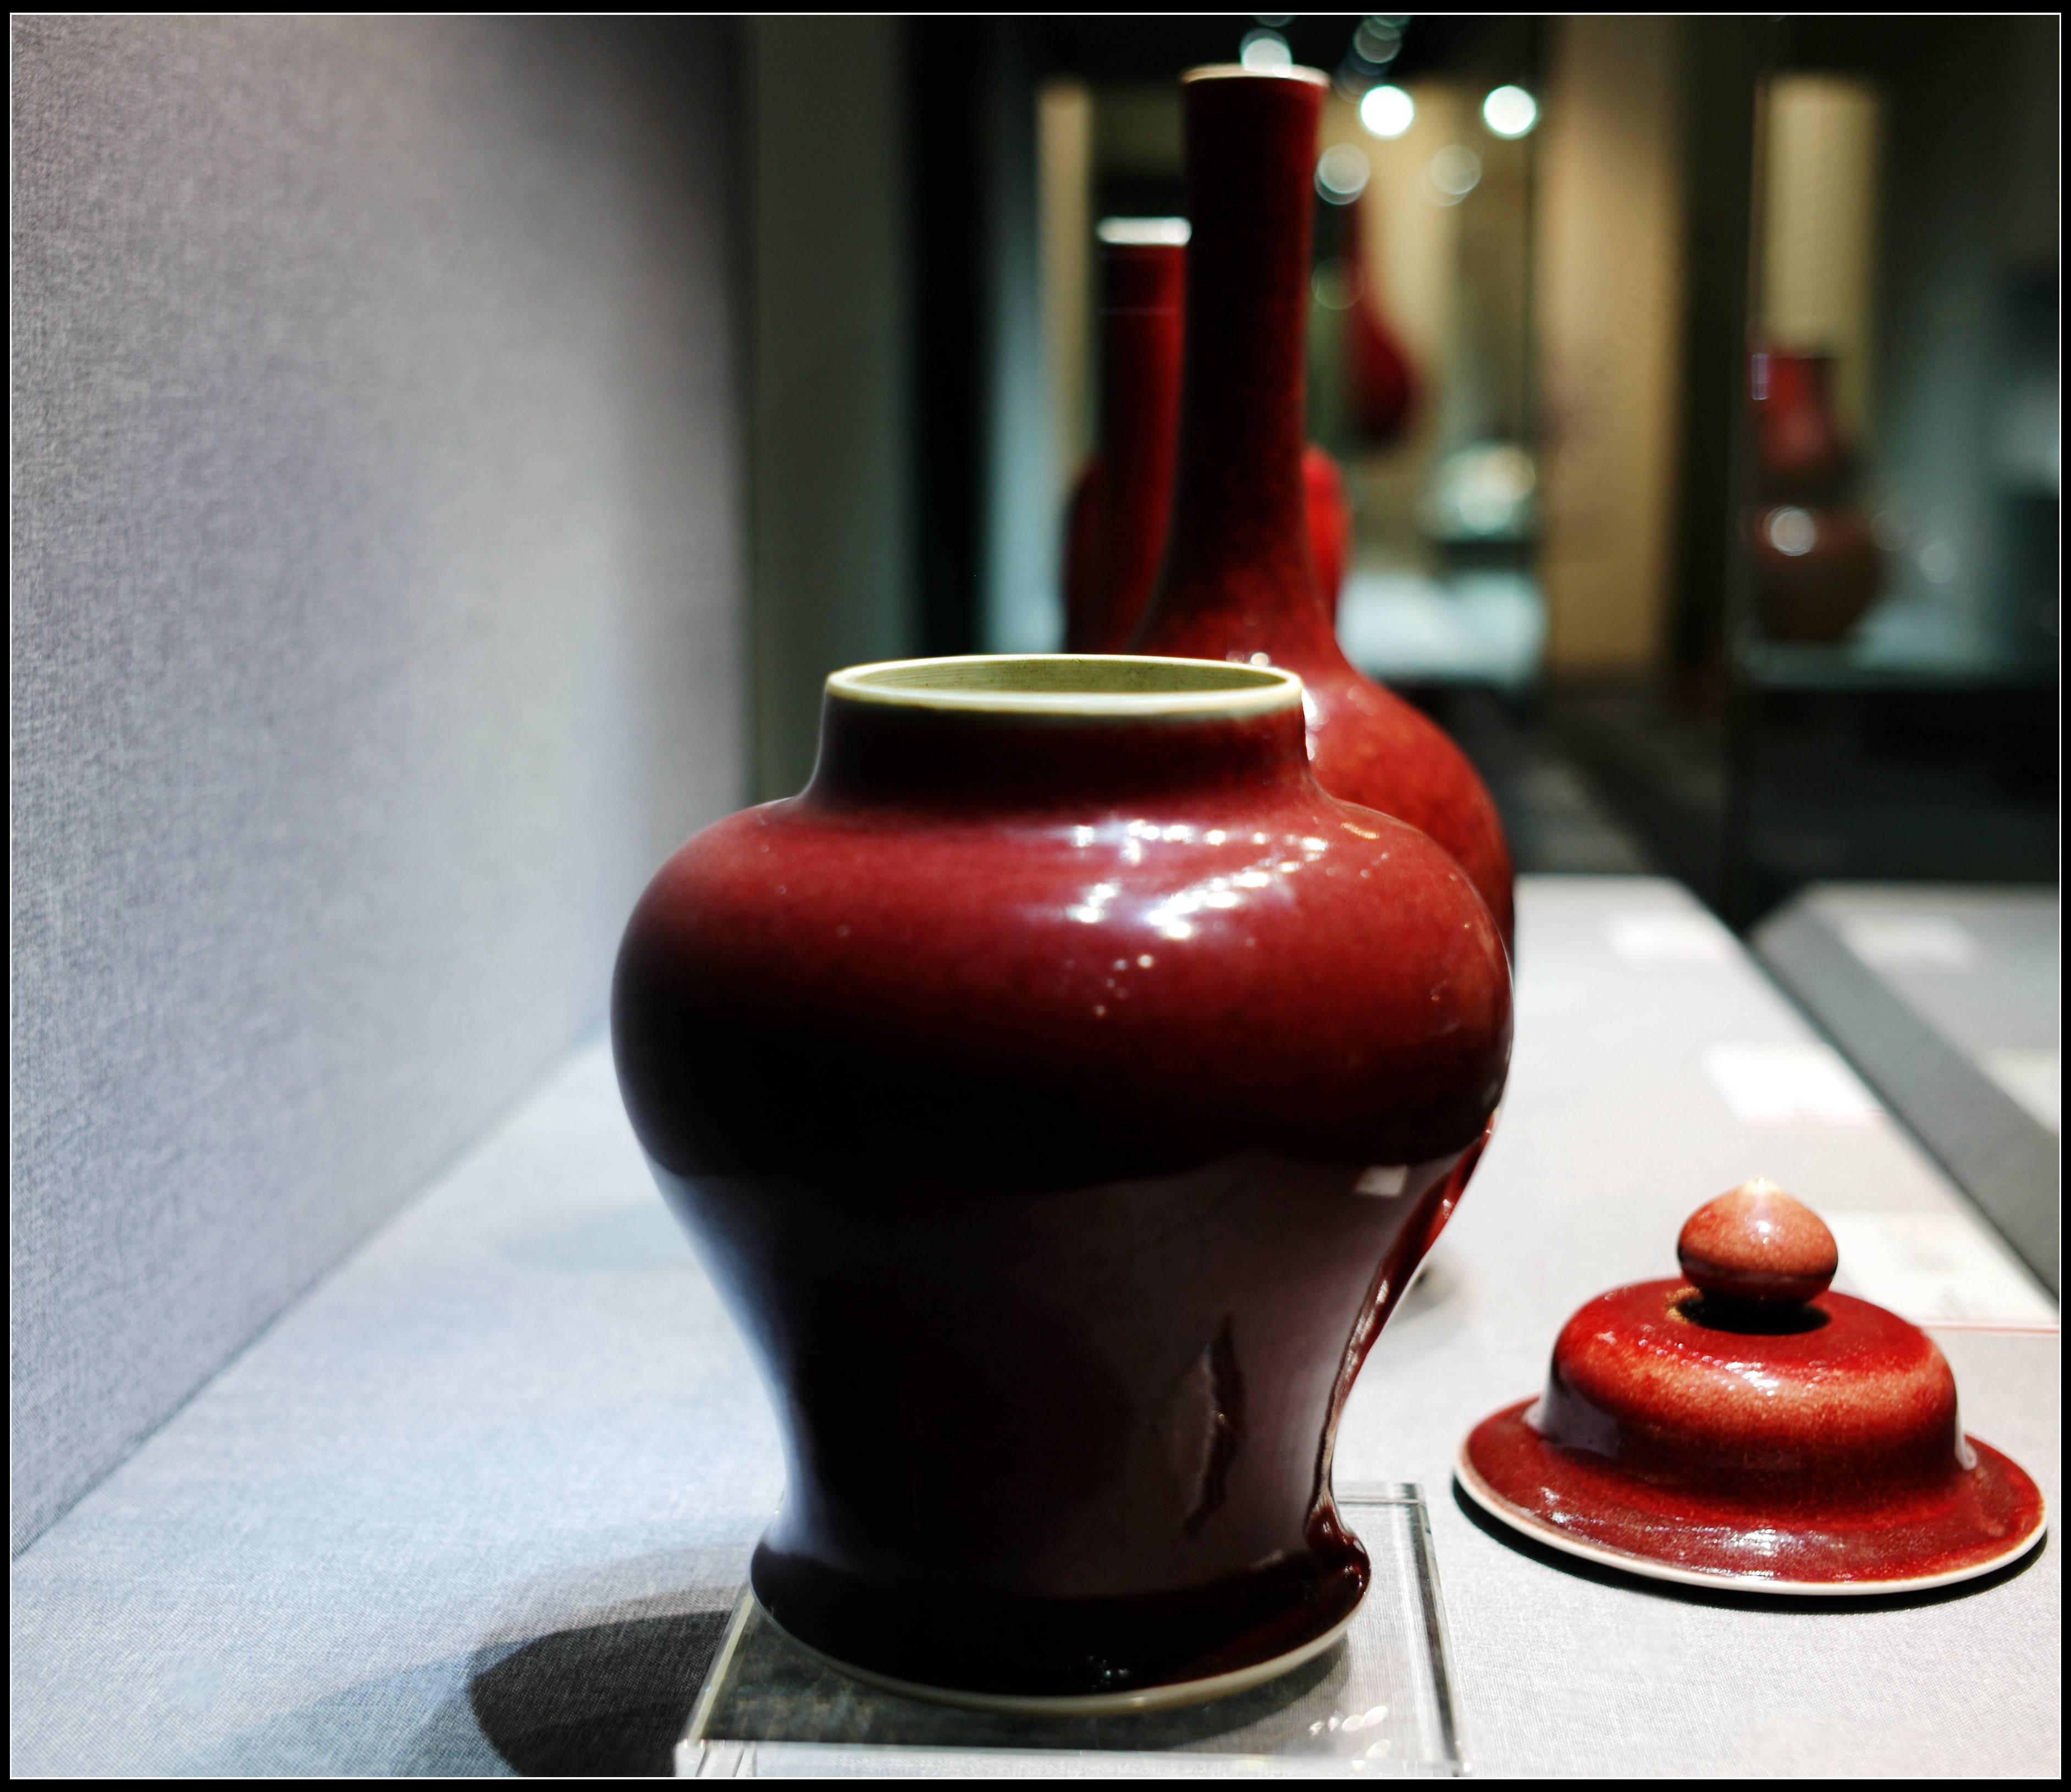 清代厚胎苹果版:人间最美单色釉，独具审美郎窑红。--保利艺术博物馆